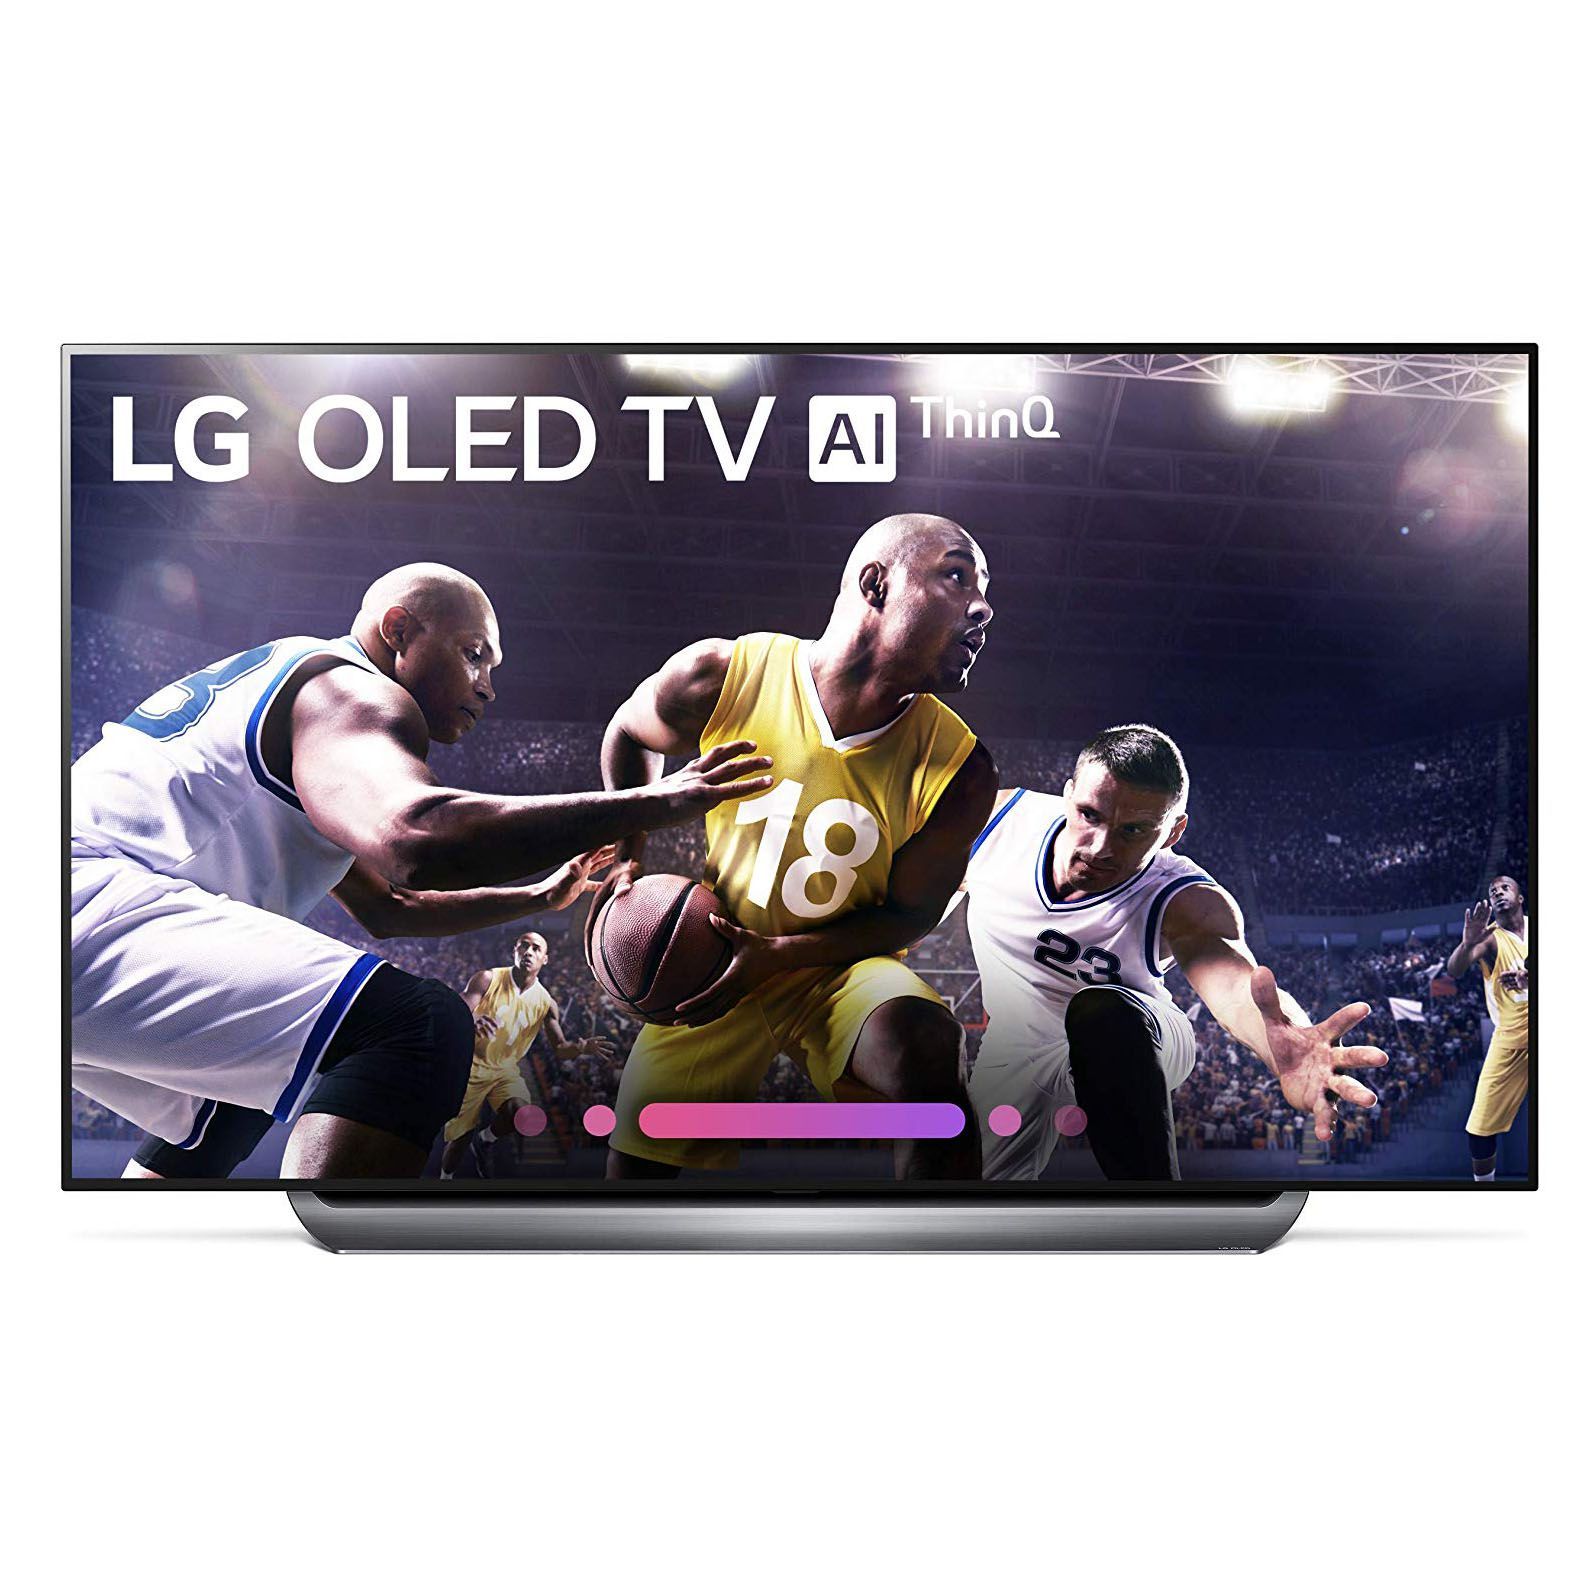 LG Electronics C8 OLED TV